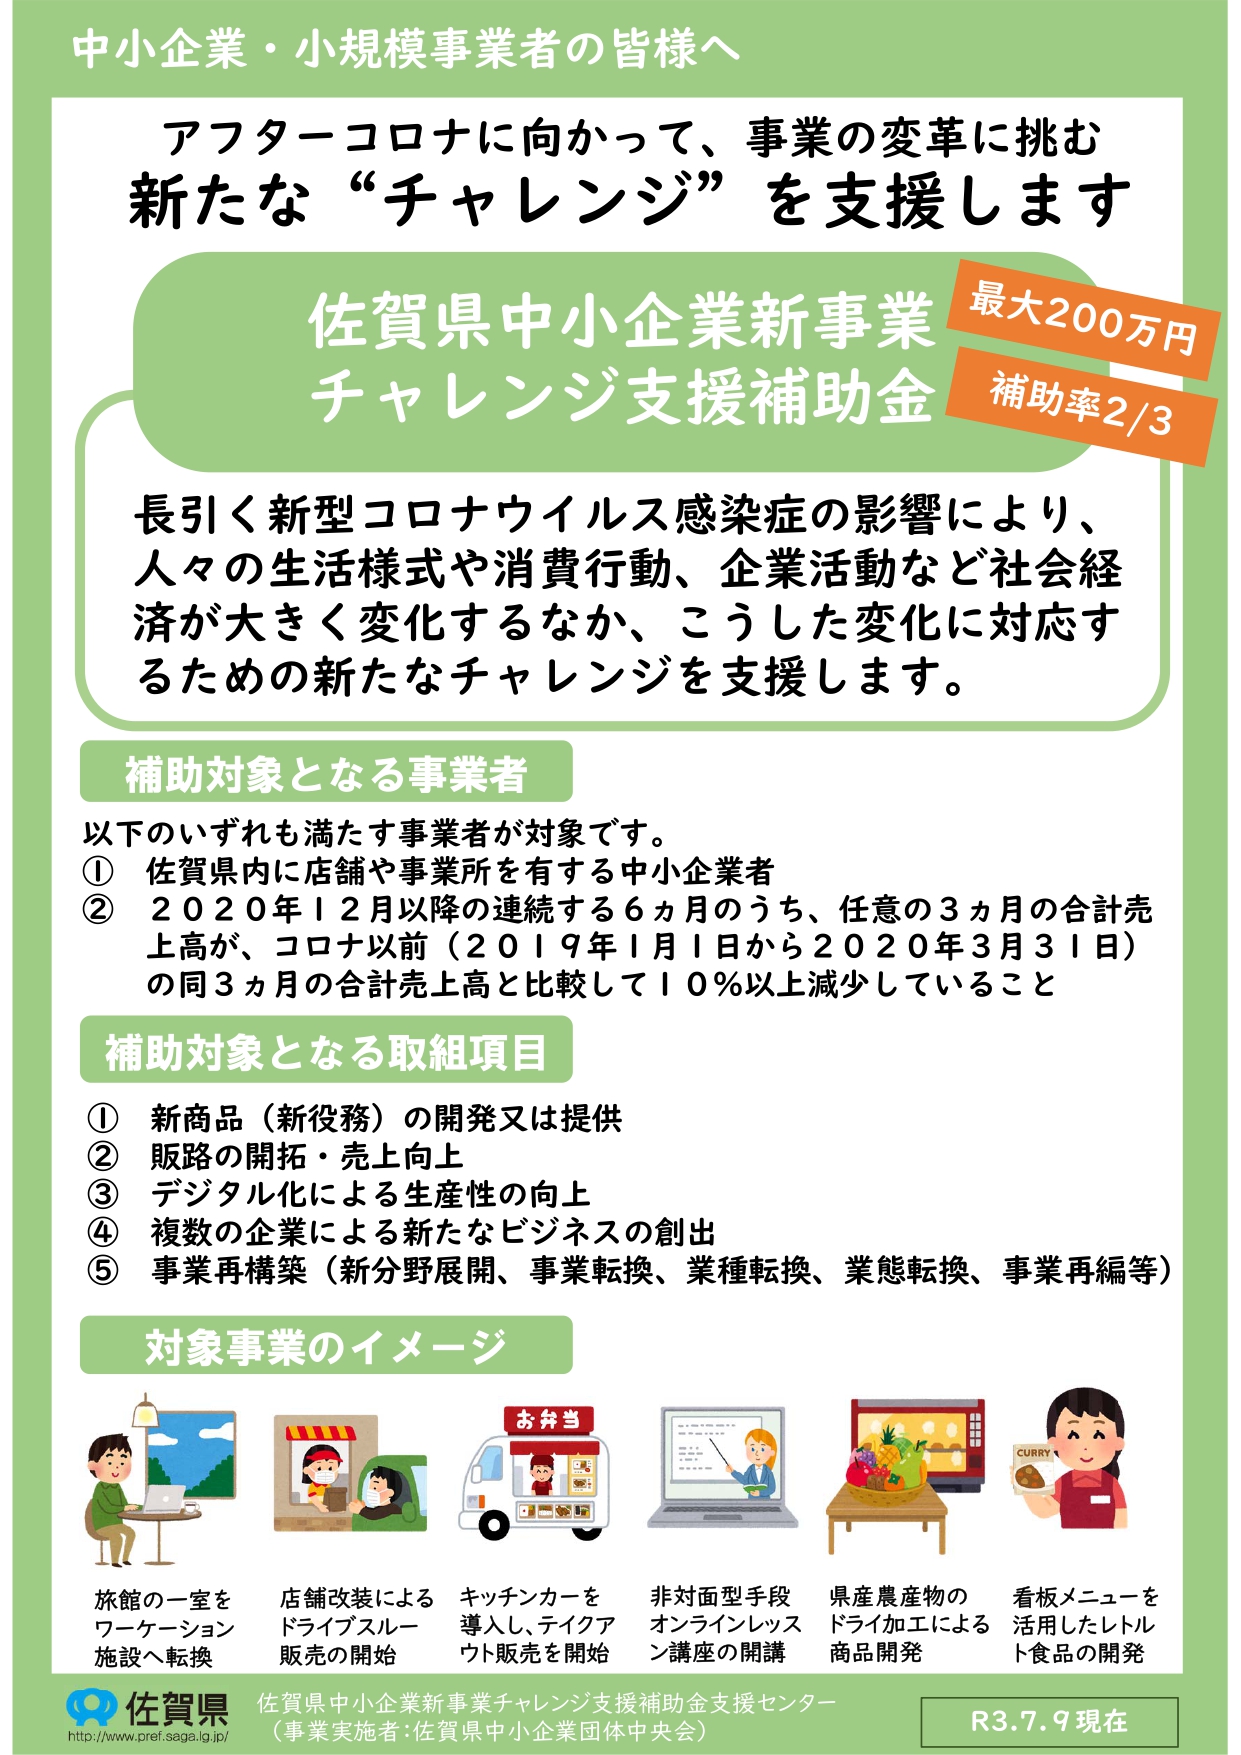 「佐賀県中小企業新事業チャレンジ支援補助金」公募のお知らせ 